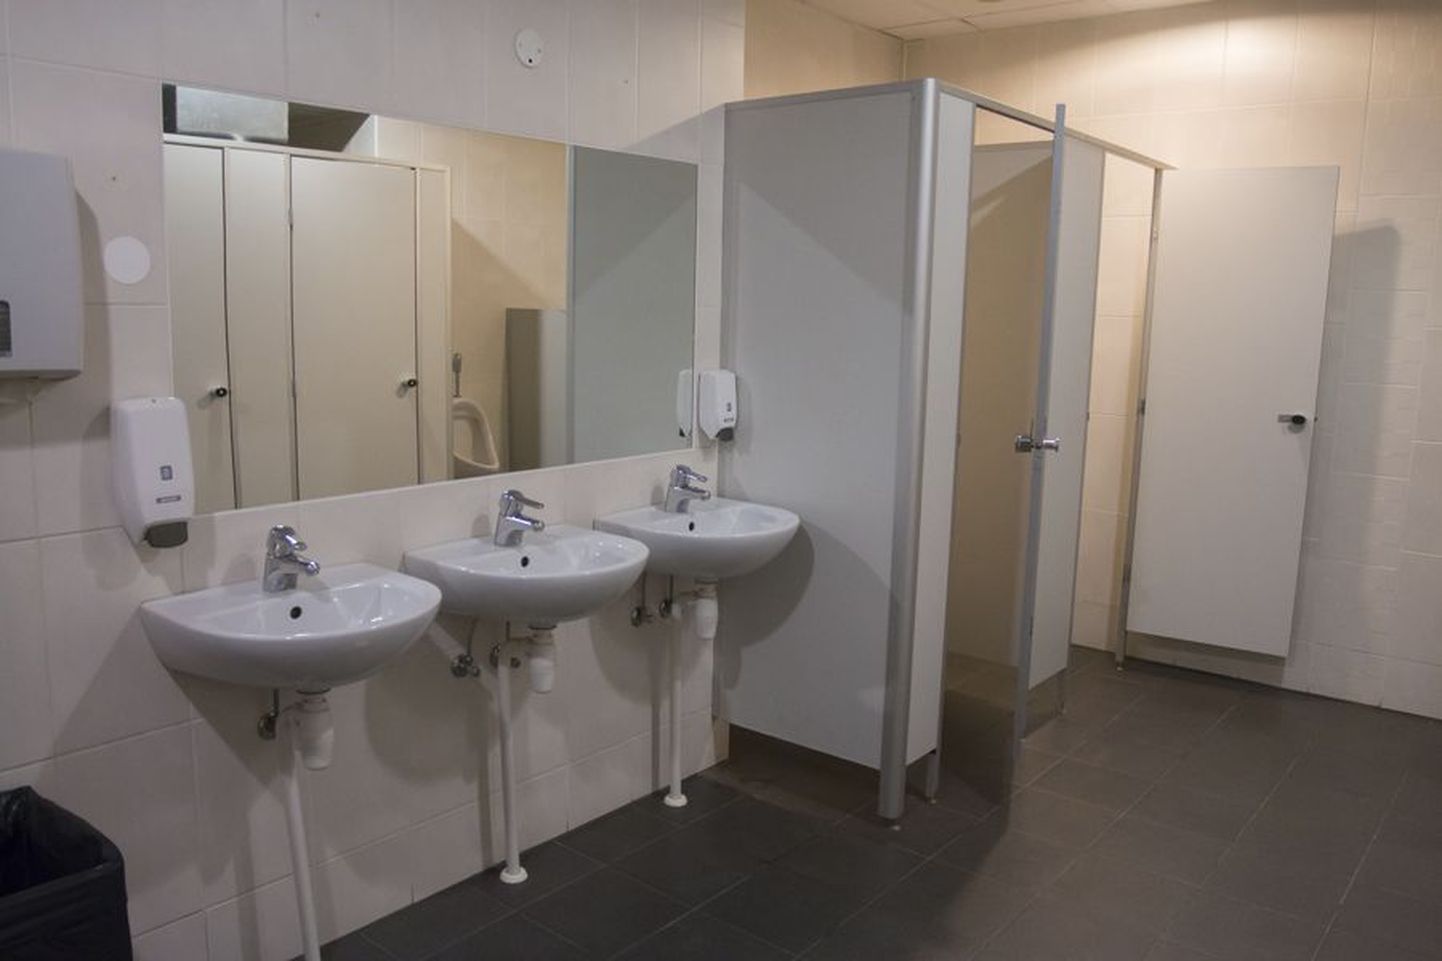 Maavalitsuse hoone all asuv avalik tualett on puhas ja tavaliselt selle ventilatsioon töötab.